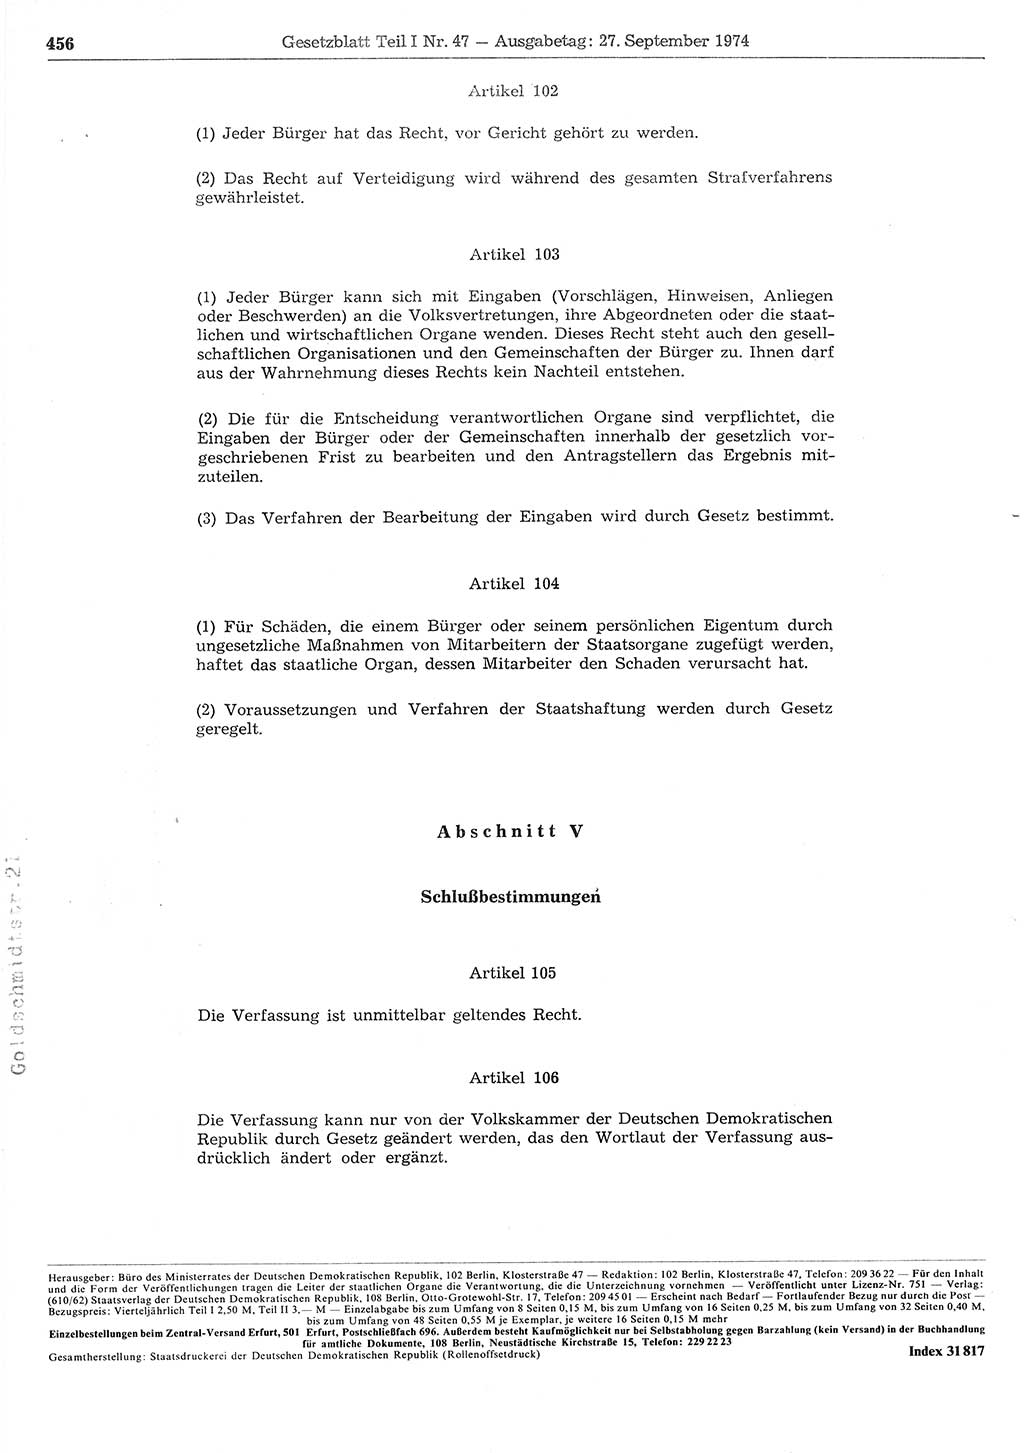 Gesetzblatt (GBl.) der Deutschen Demokratischen Republik (DDR) Teil Ⅰ 1974, Seite 456 (GBl. DDR Ⅰ 1974, S. 456)